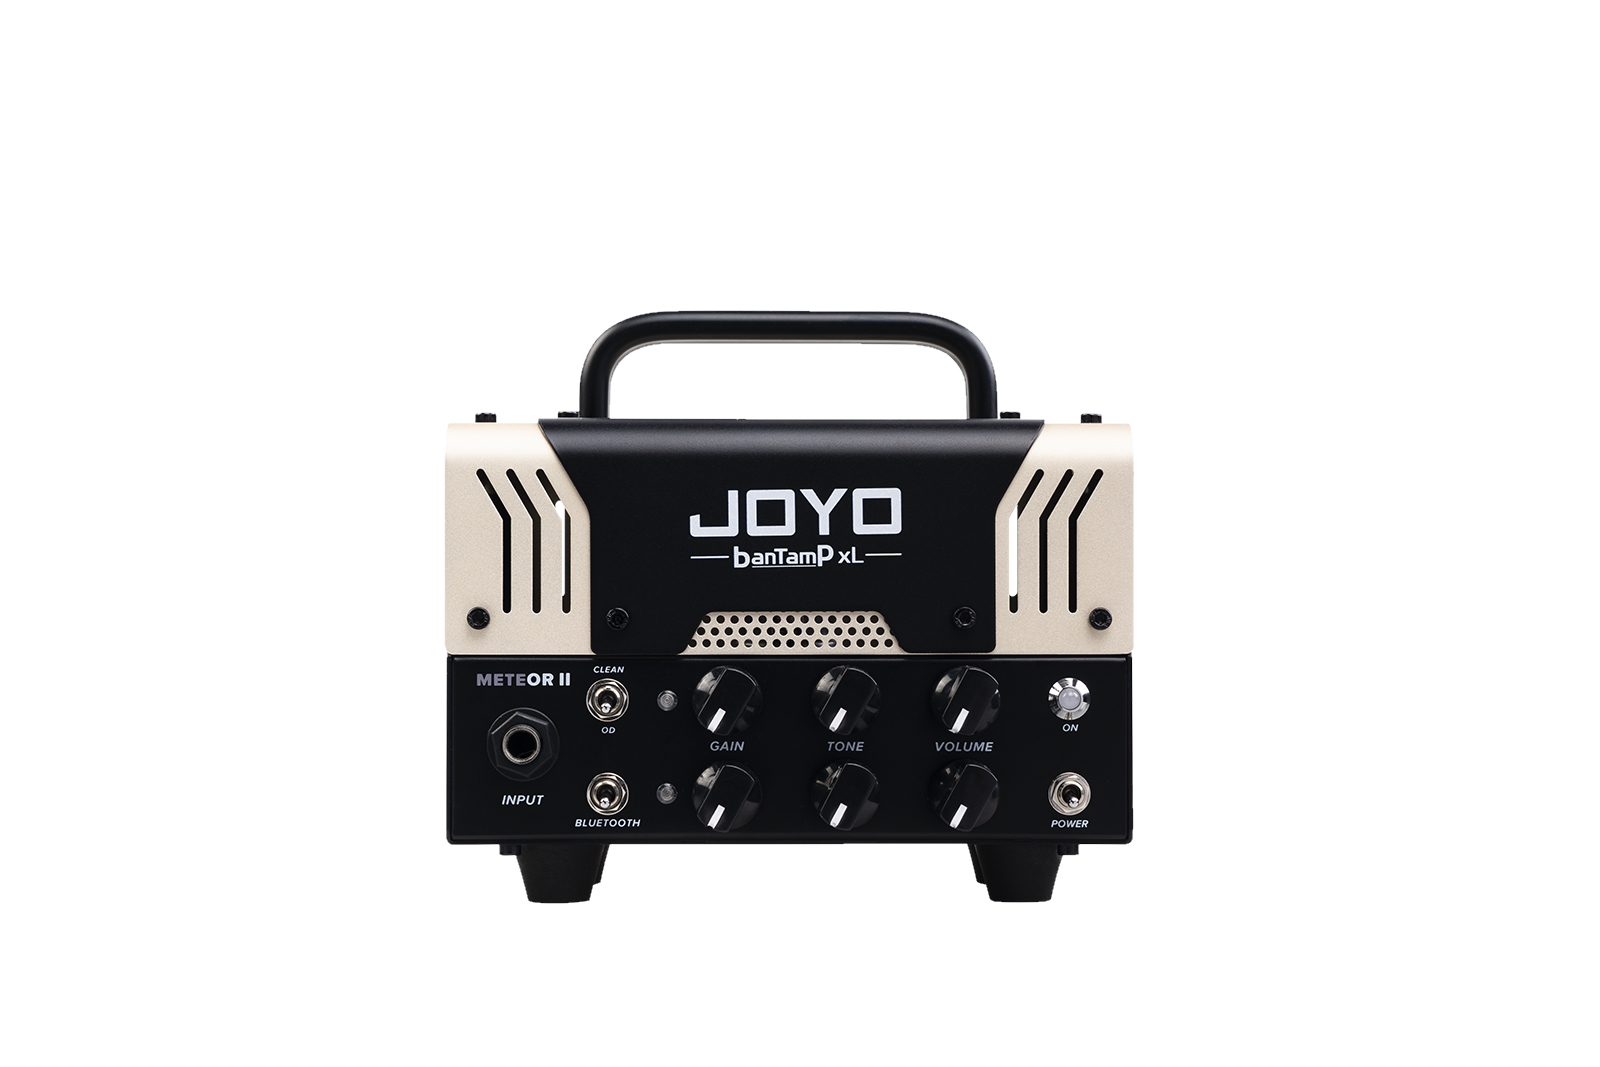 Гитарные усилители Joyo BanTamP XL METEOR-II гитарные усилители mxr m80 bass d i